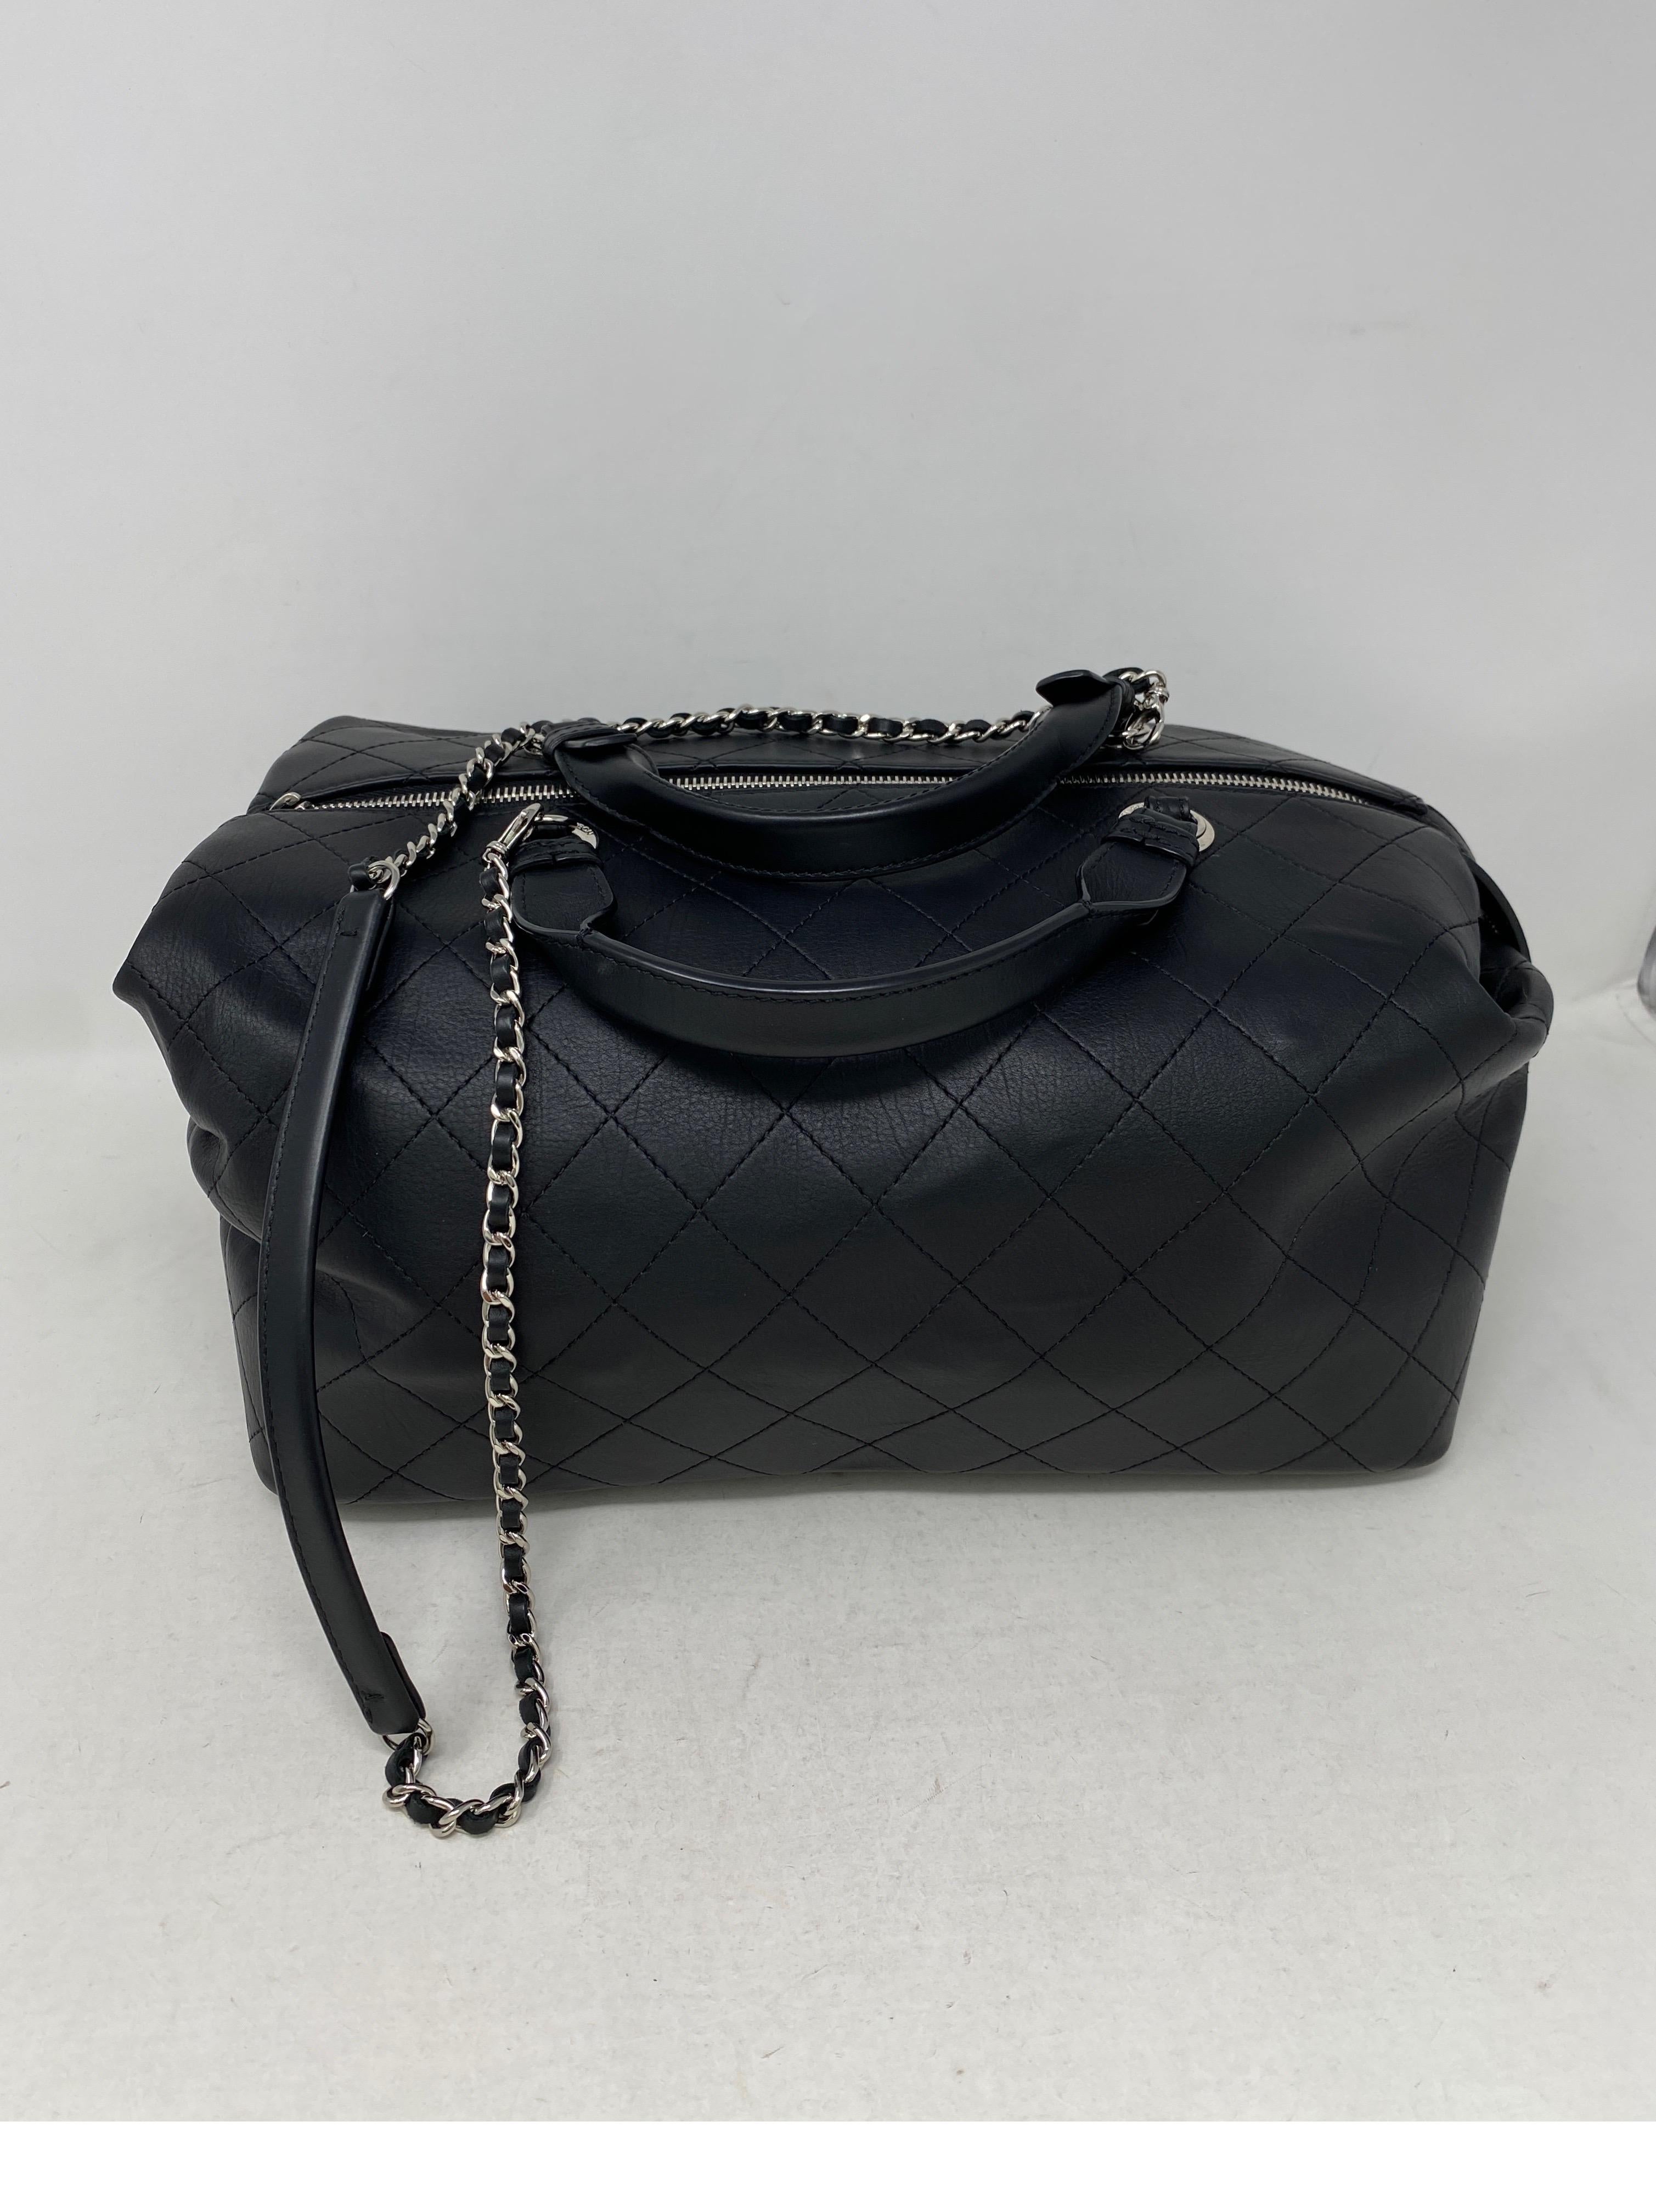 Chanel Handbags Doctor Bag - For Sale on 1stDibs